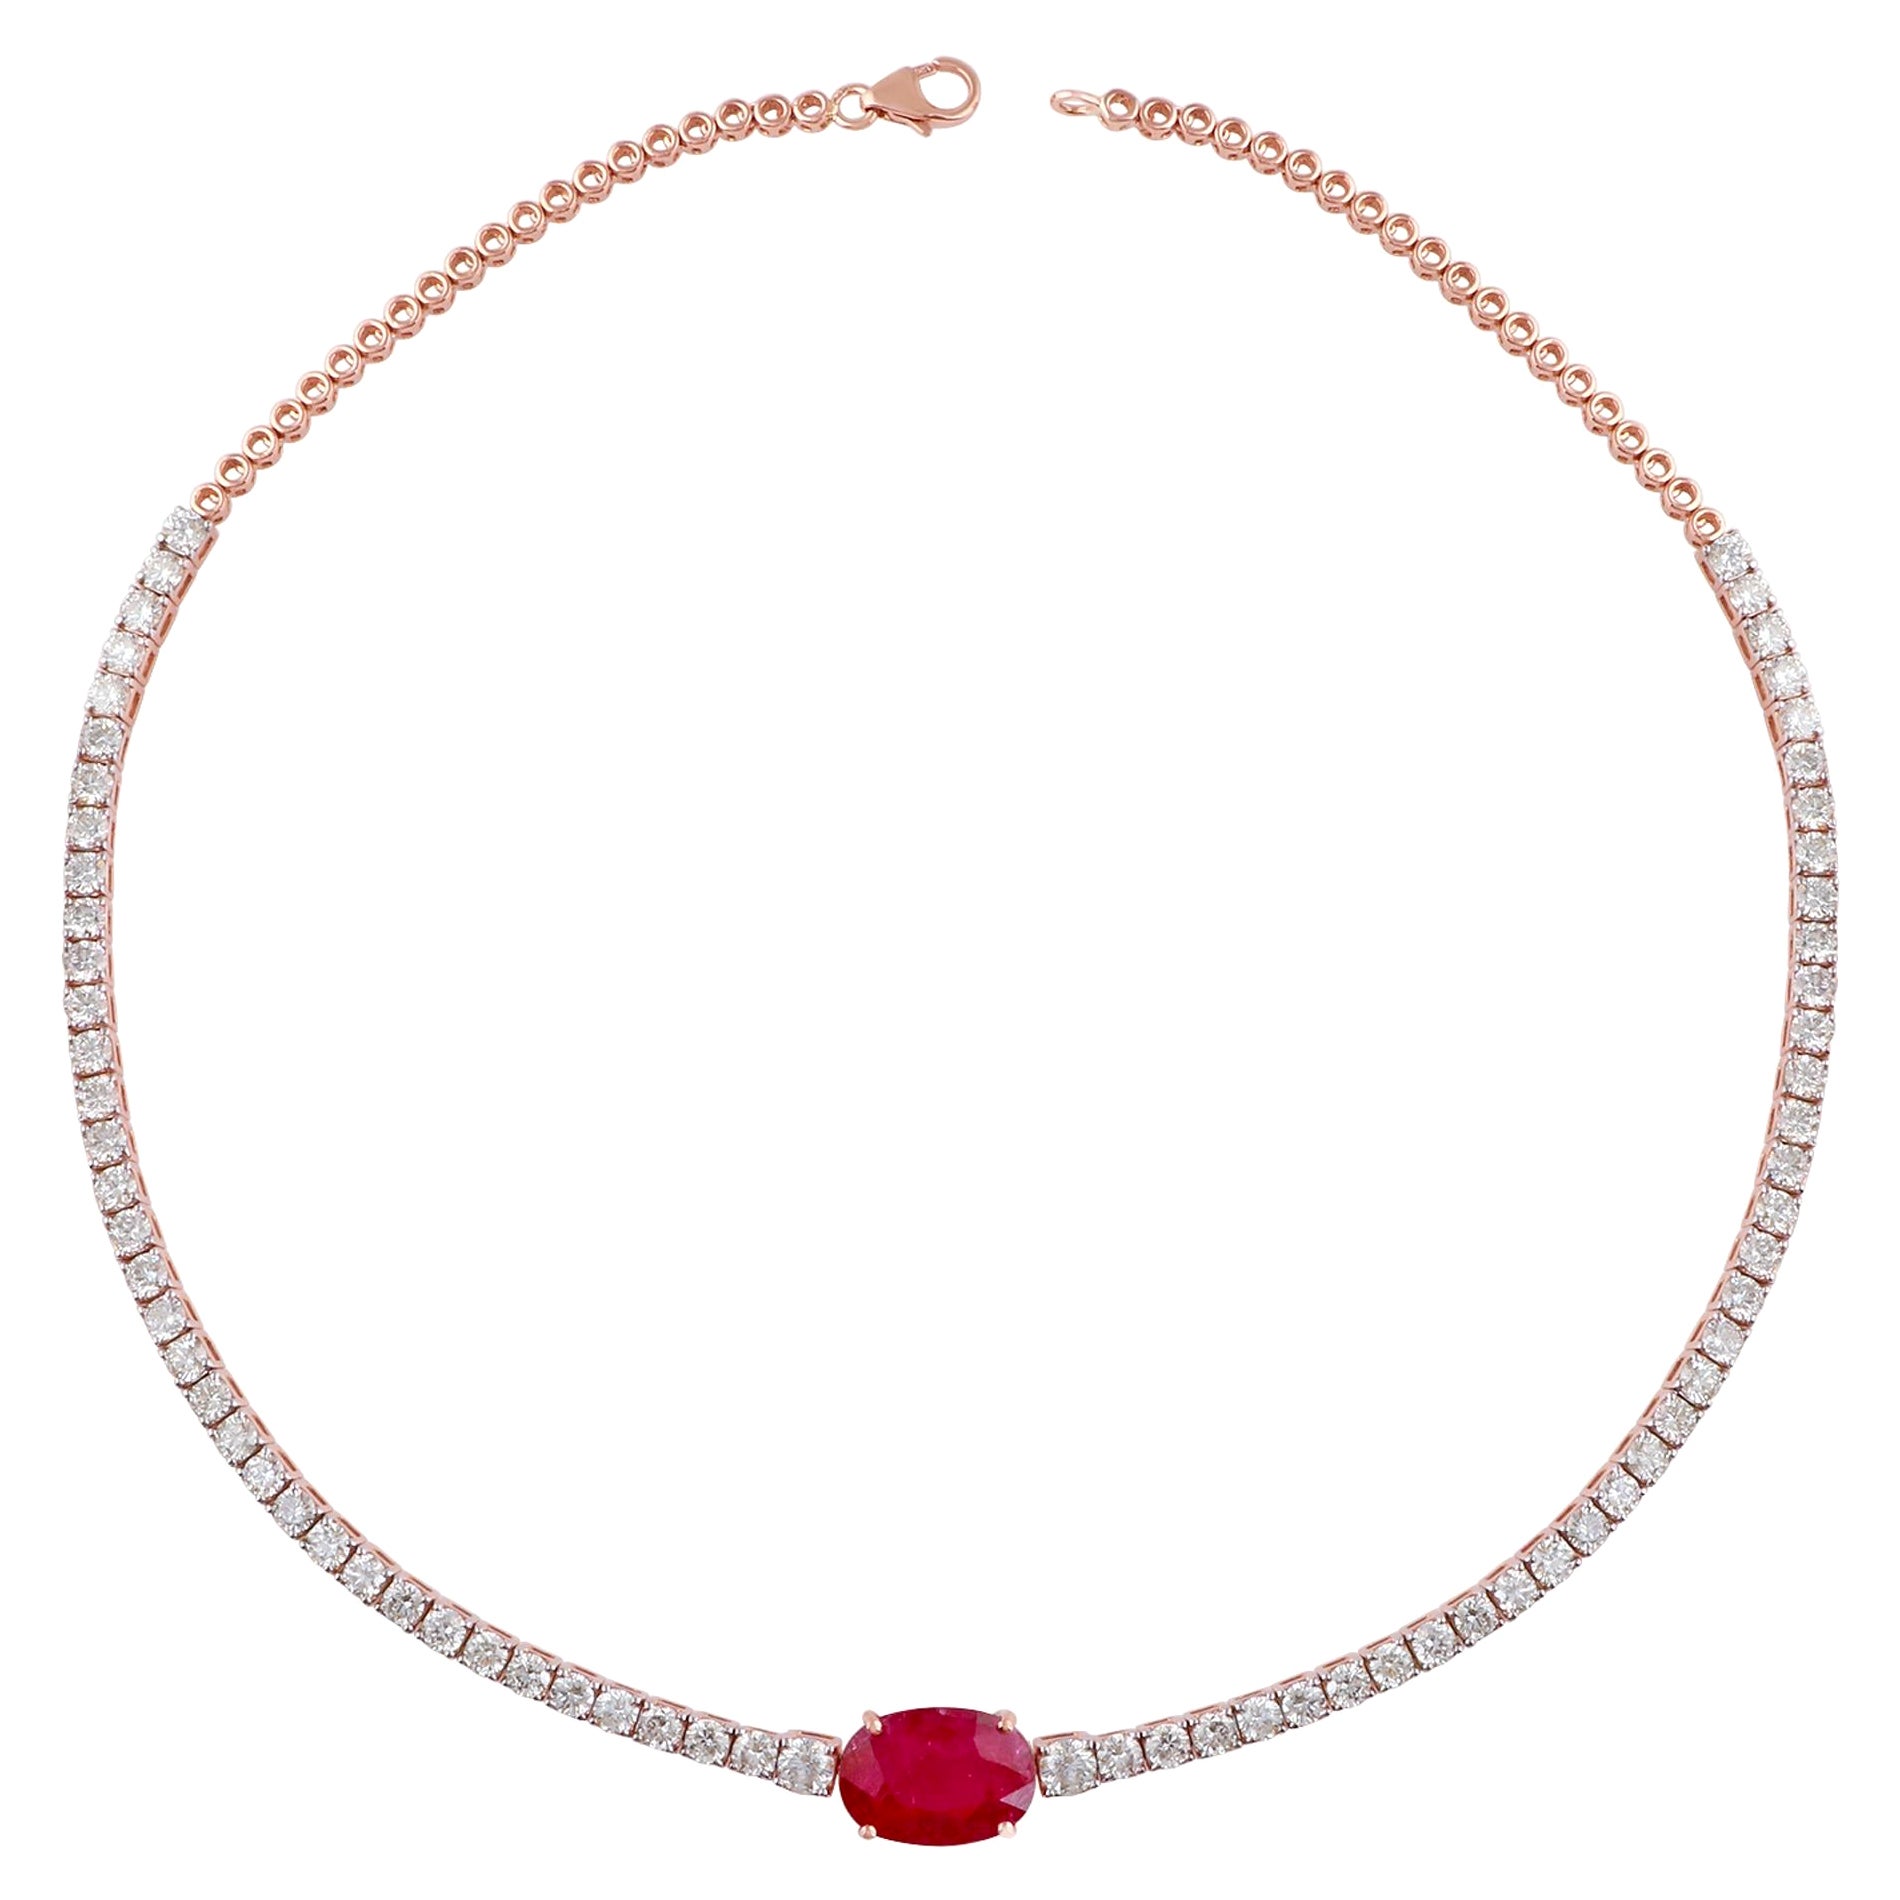 Collier ras du cou en or rose 14 carats avec pierres précieuses rubis ovales et diamants, fabrication artisanale